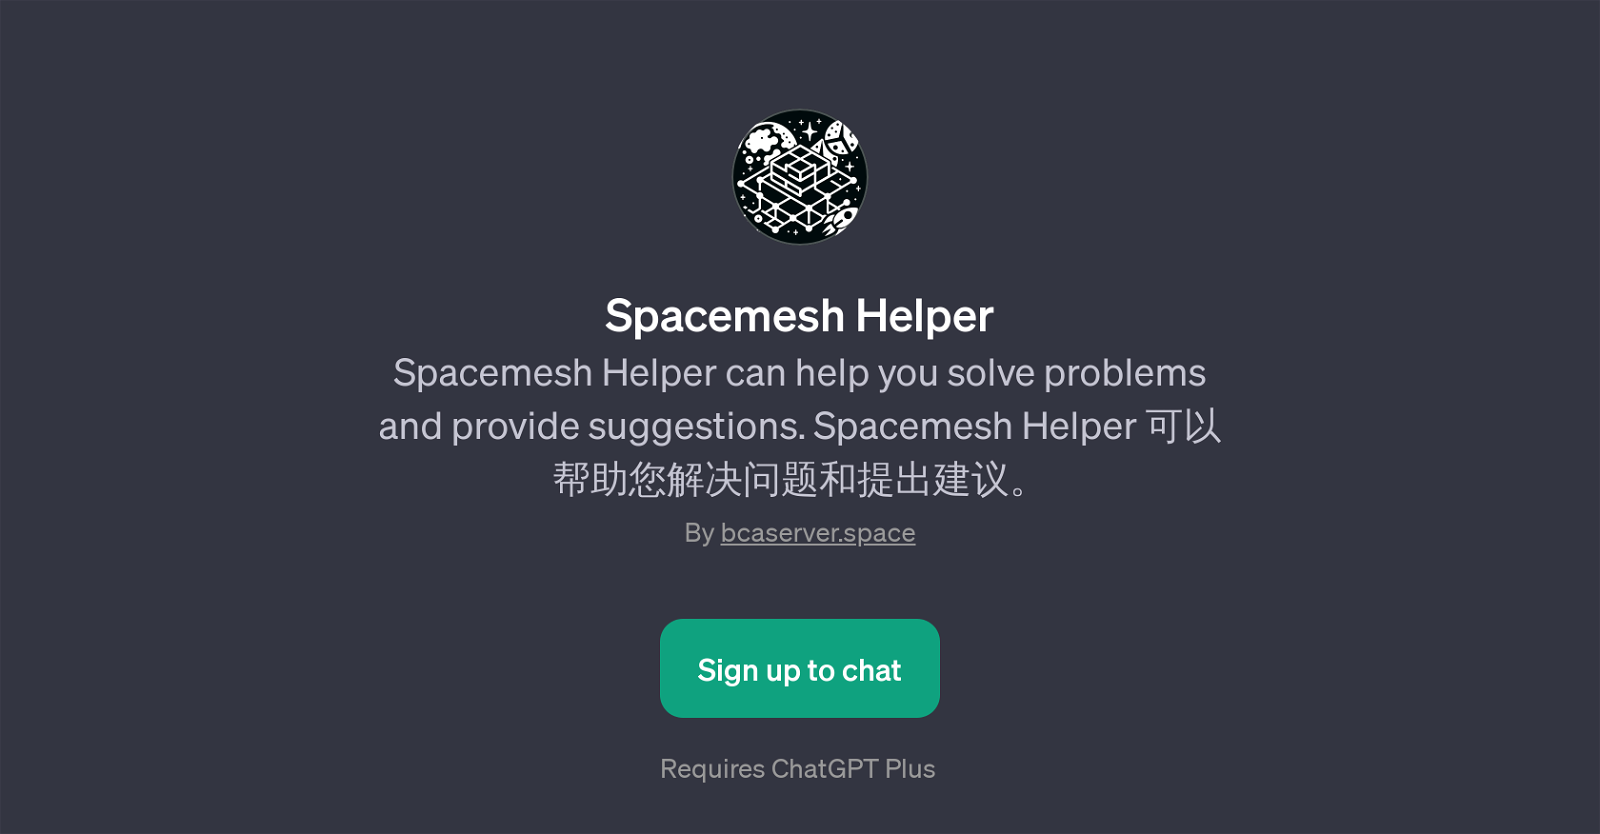 Spacemesh Helper website